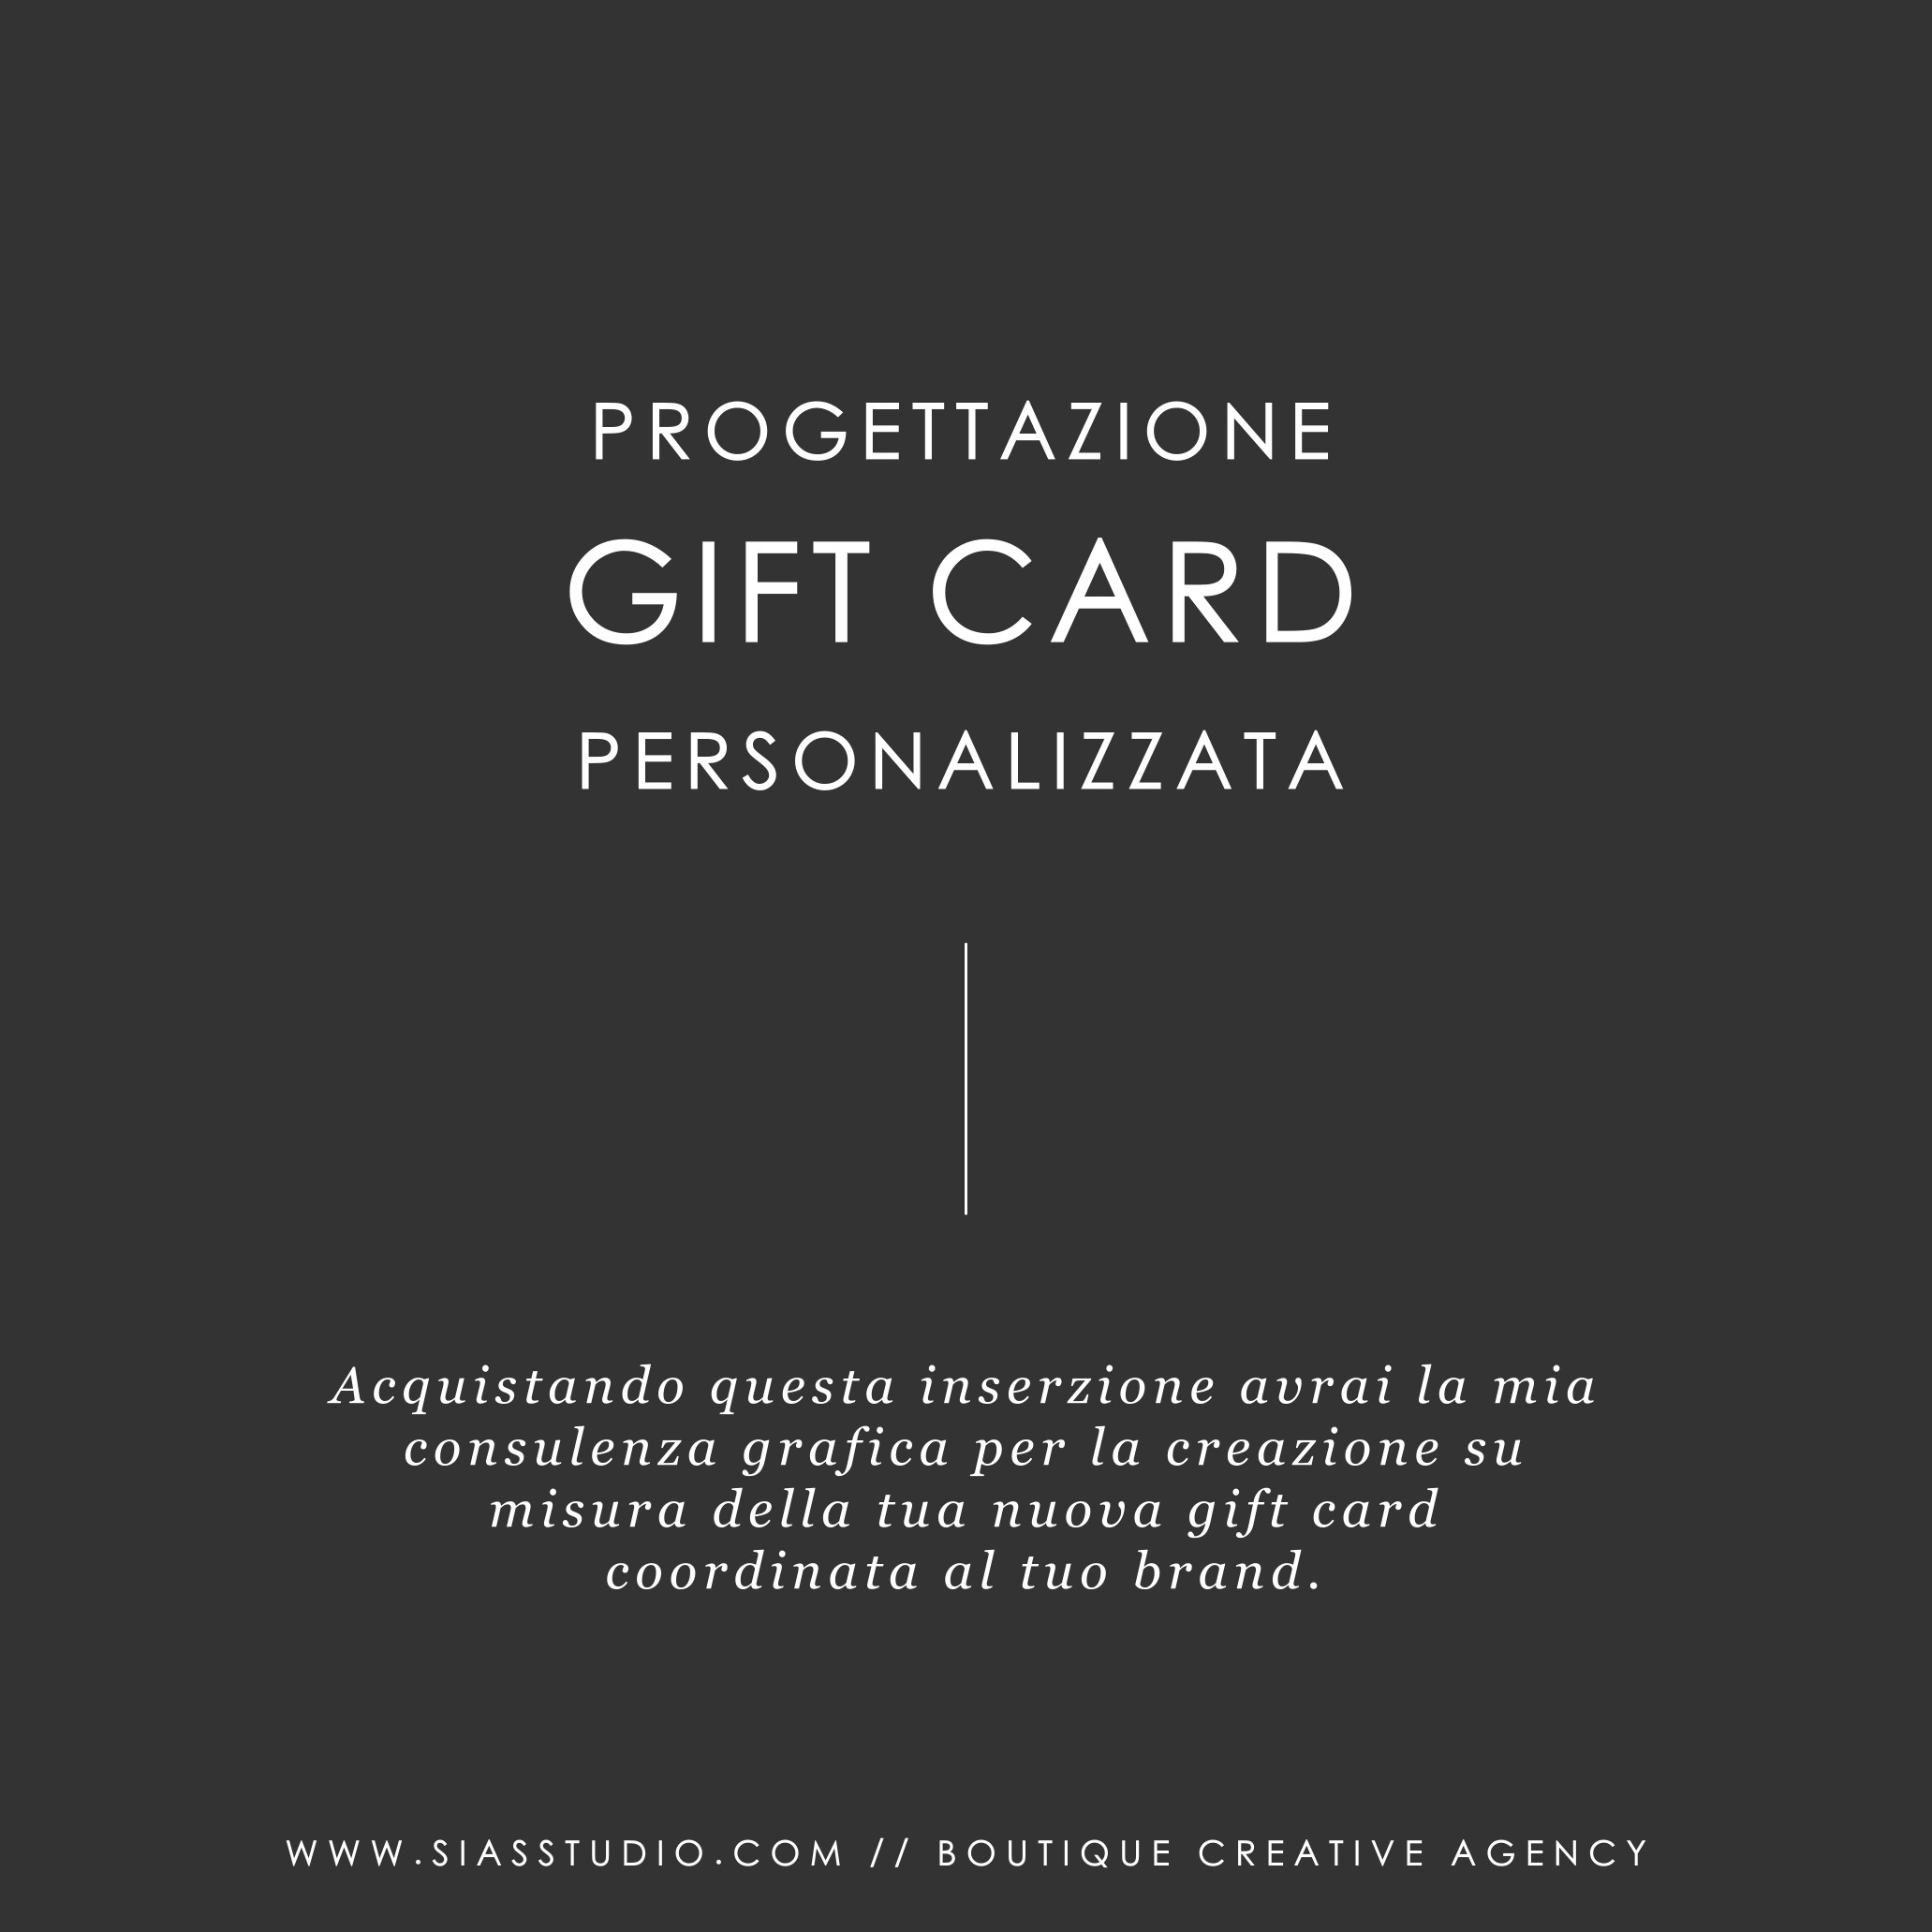 Progettazione Gift Card Personalizzata